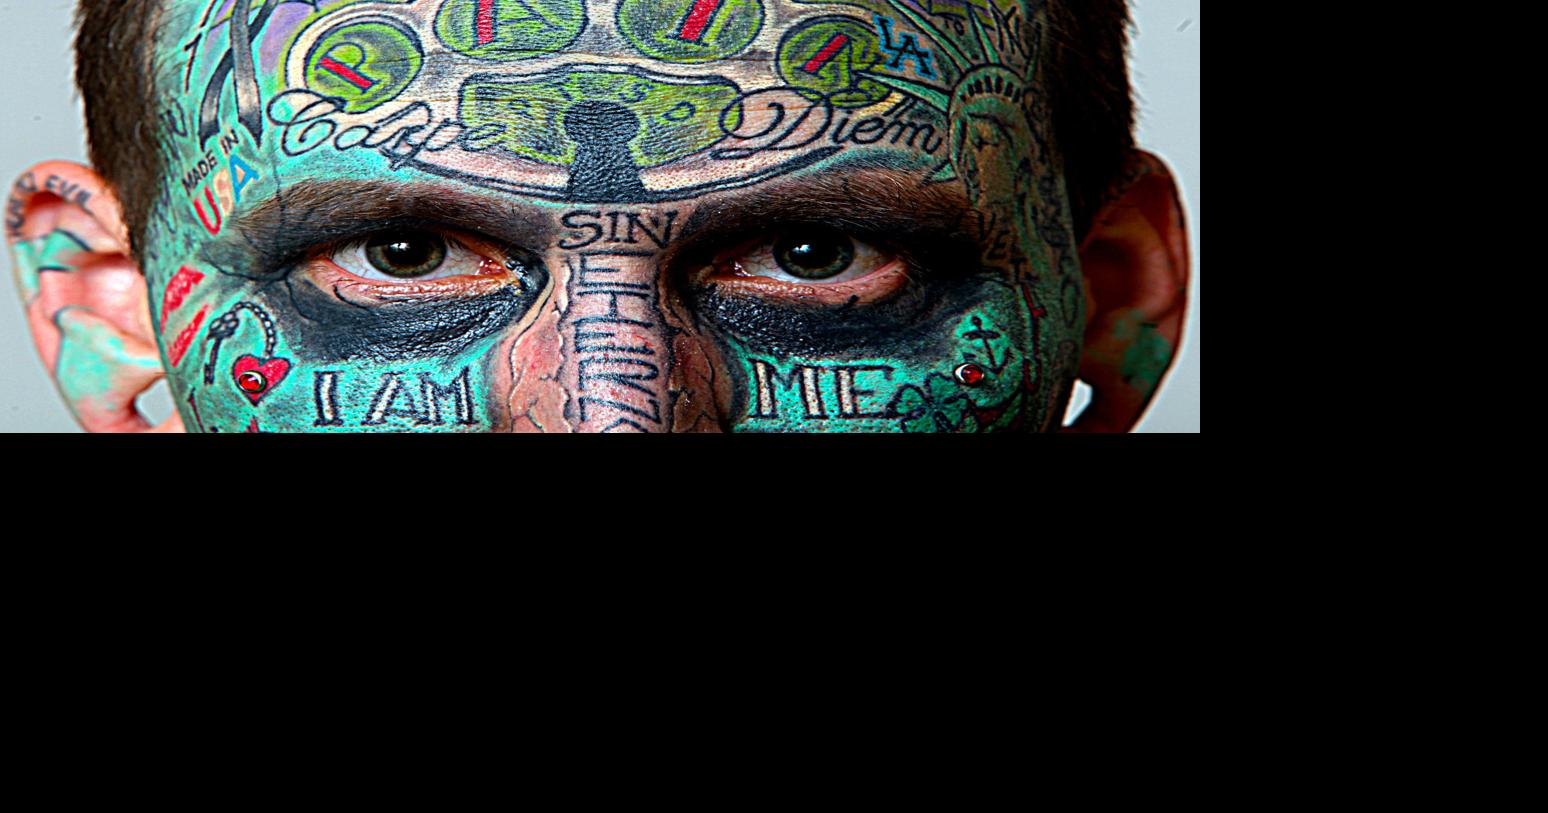 Tattoo Artist Gifts Tattoos Making Ugly People Beautiful Tattoo Art Print